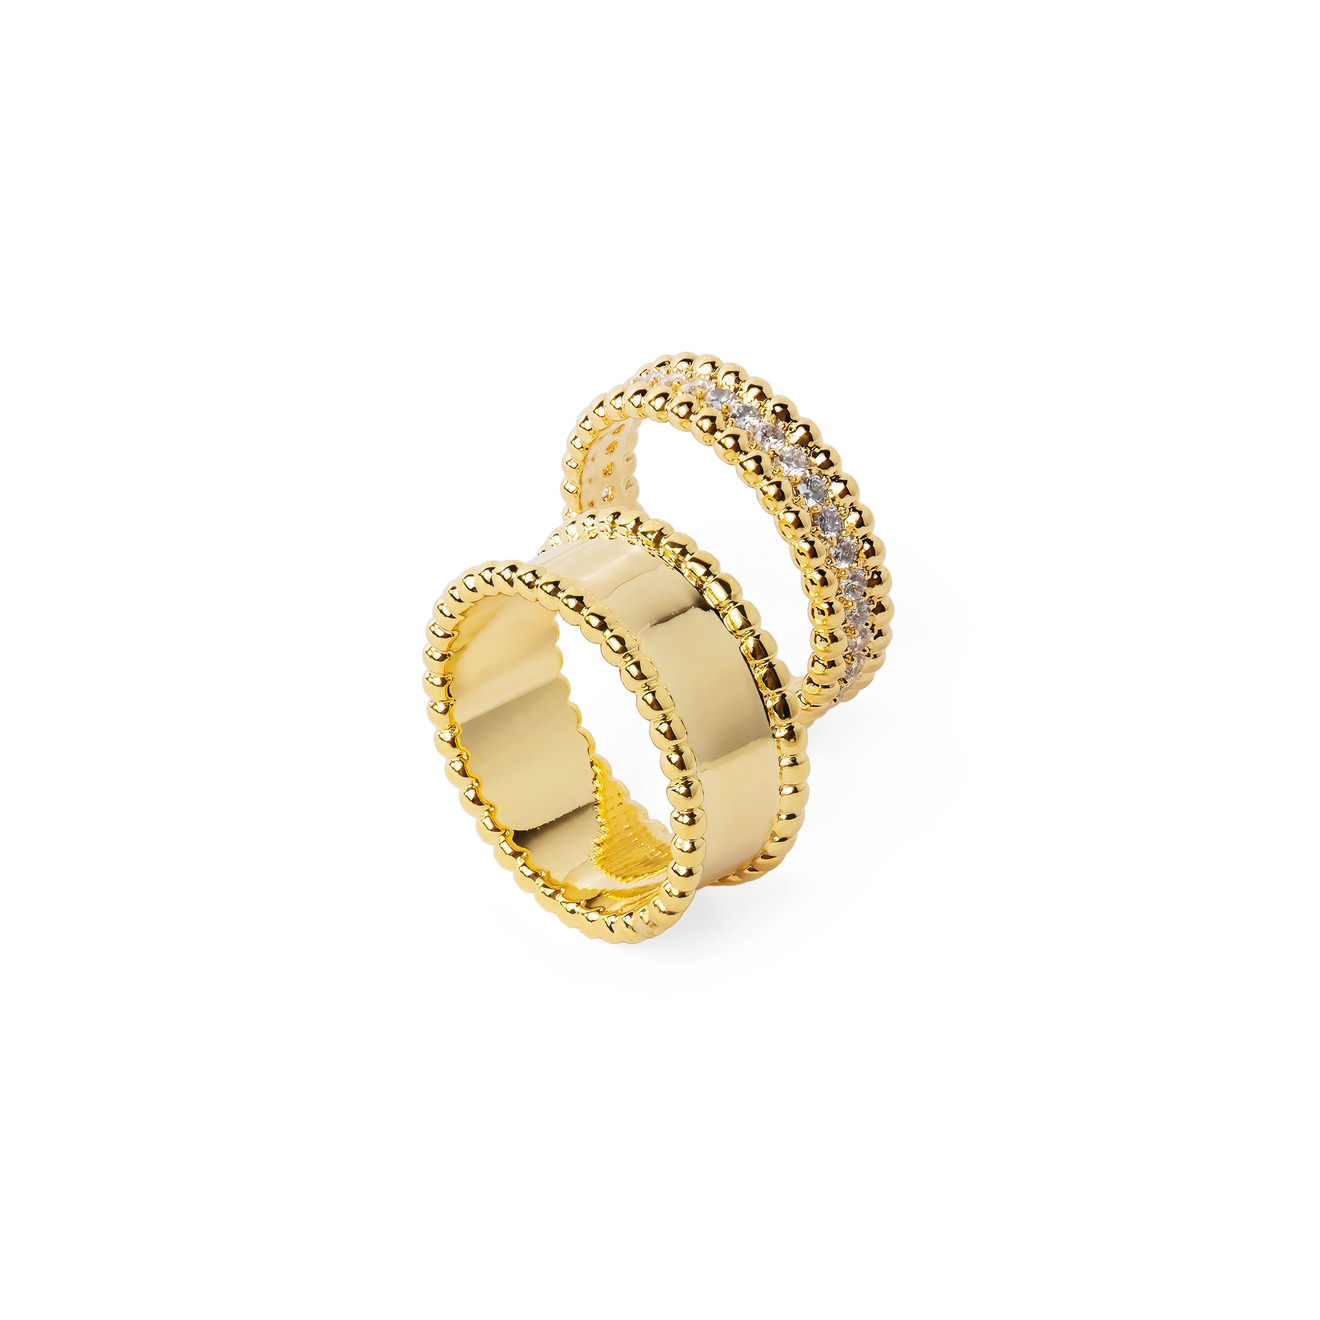 Herald Percy Сет золотистых колец с шариками и кристаллами gem kingdom сет из трех золотистых колец